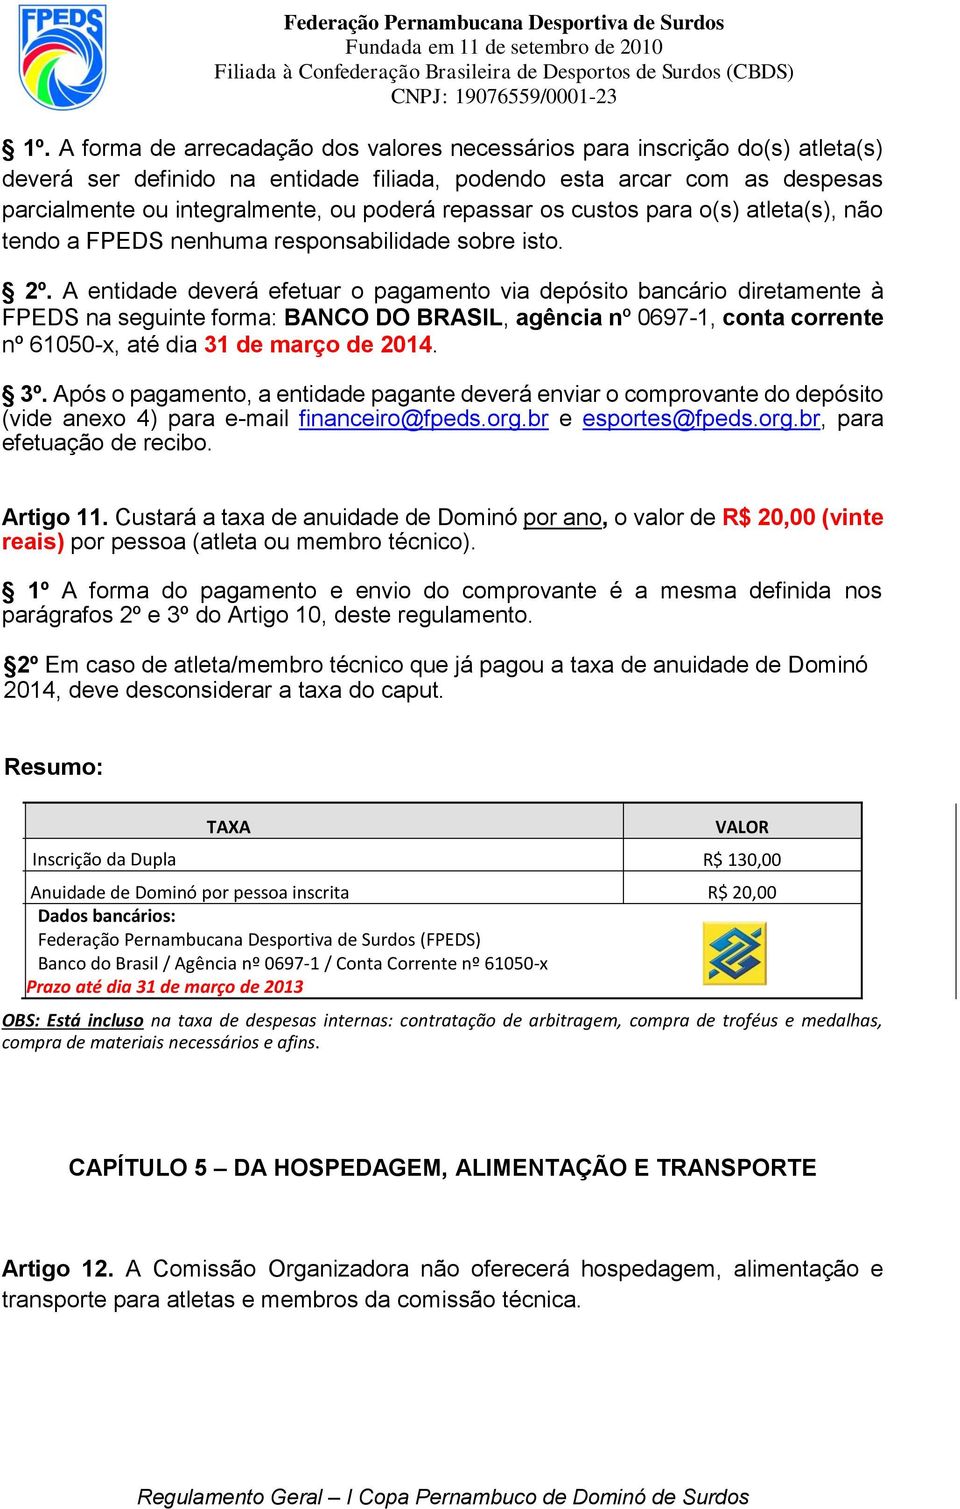 A entidade deverá efetuar o pagamento via depósito bancário diretamente à FPEDS na seguinte forma: BANCO DO BRASIL, agência nº 0697-1, conta corrente nº 61050-x, até dia 31 de março de 2014. 3º.